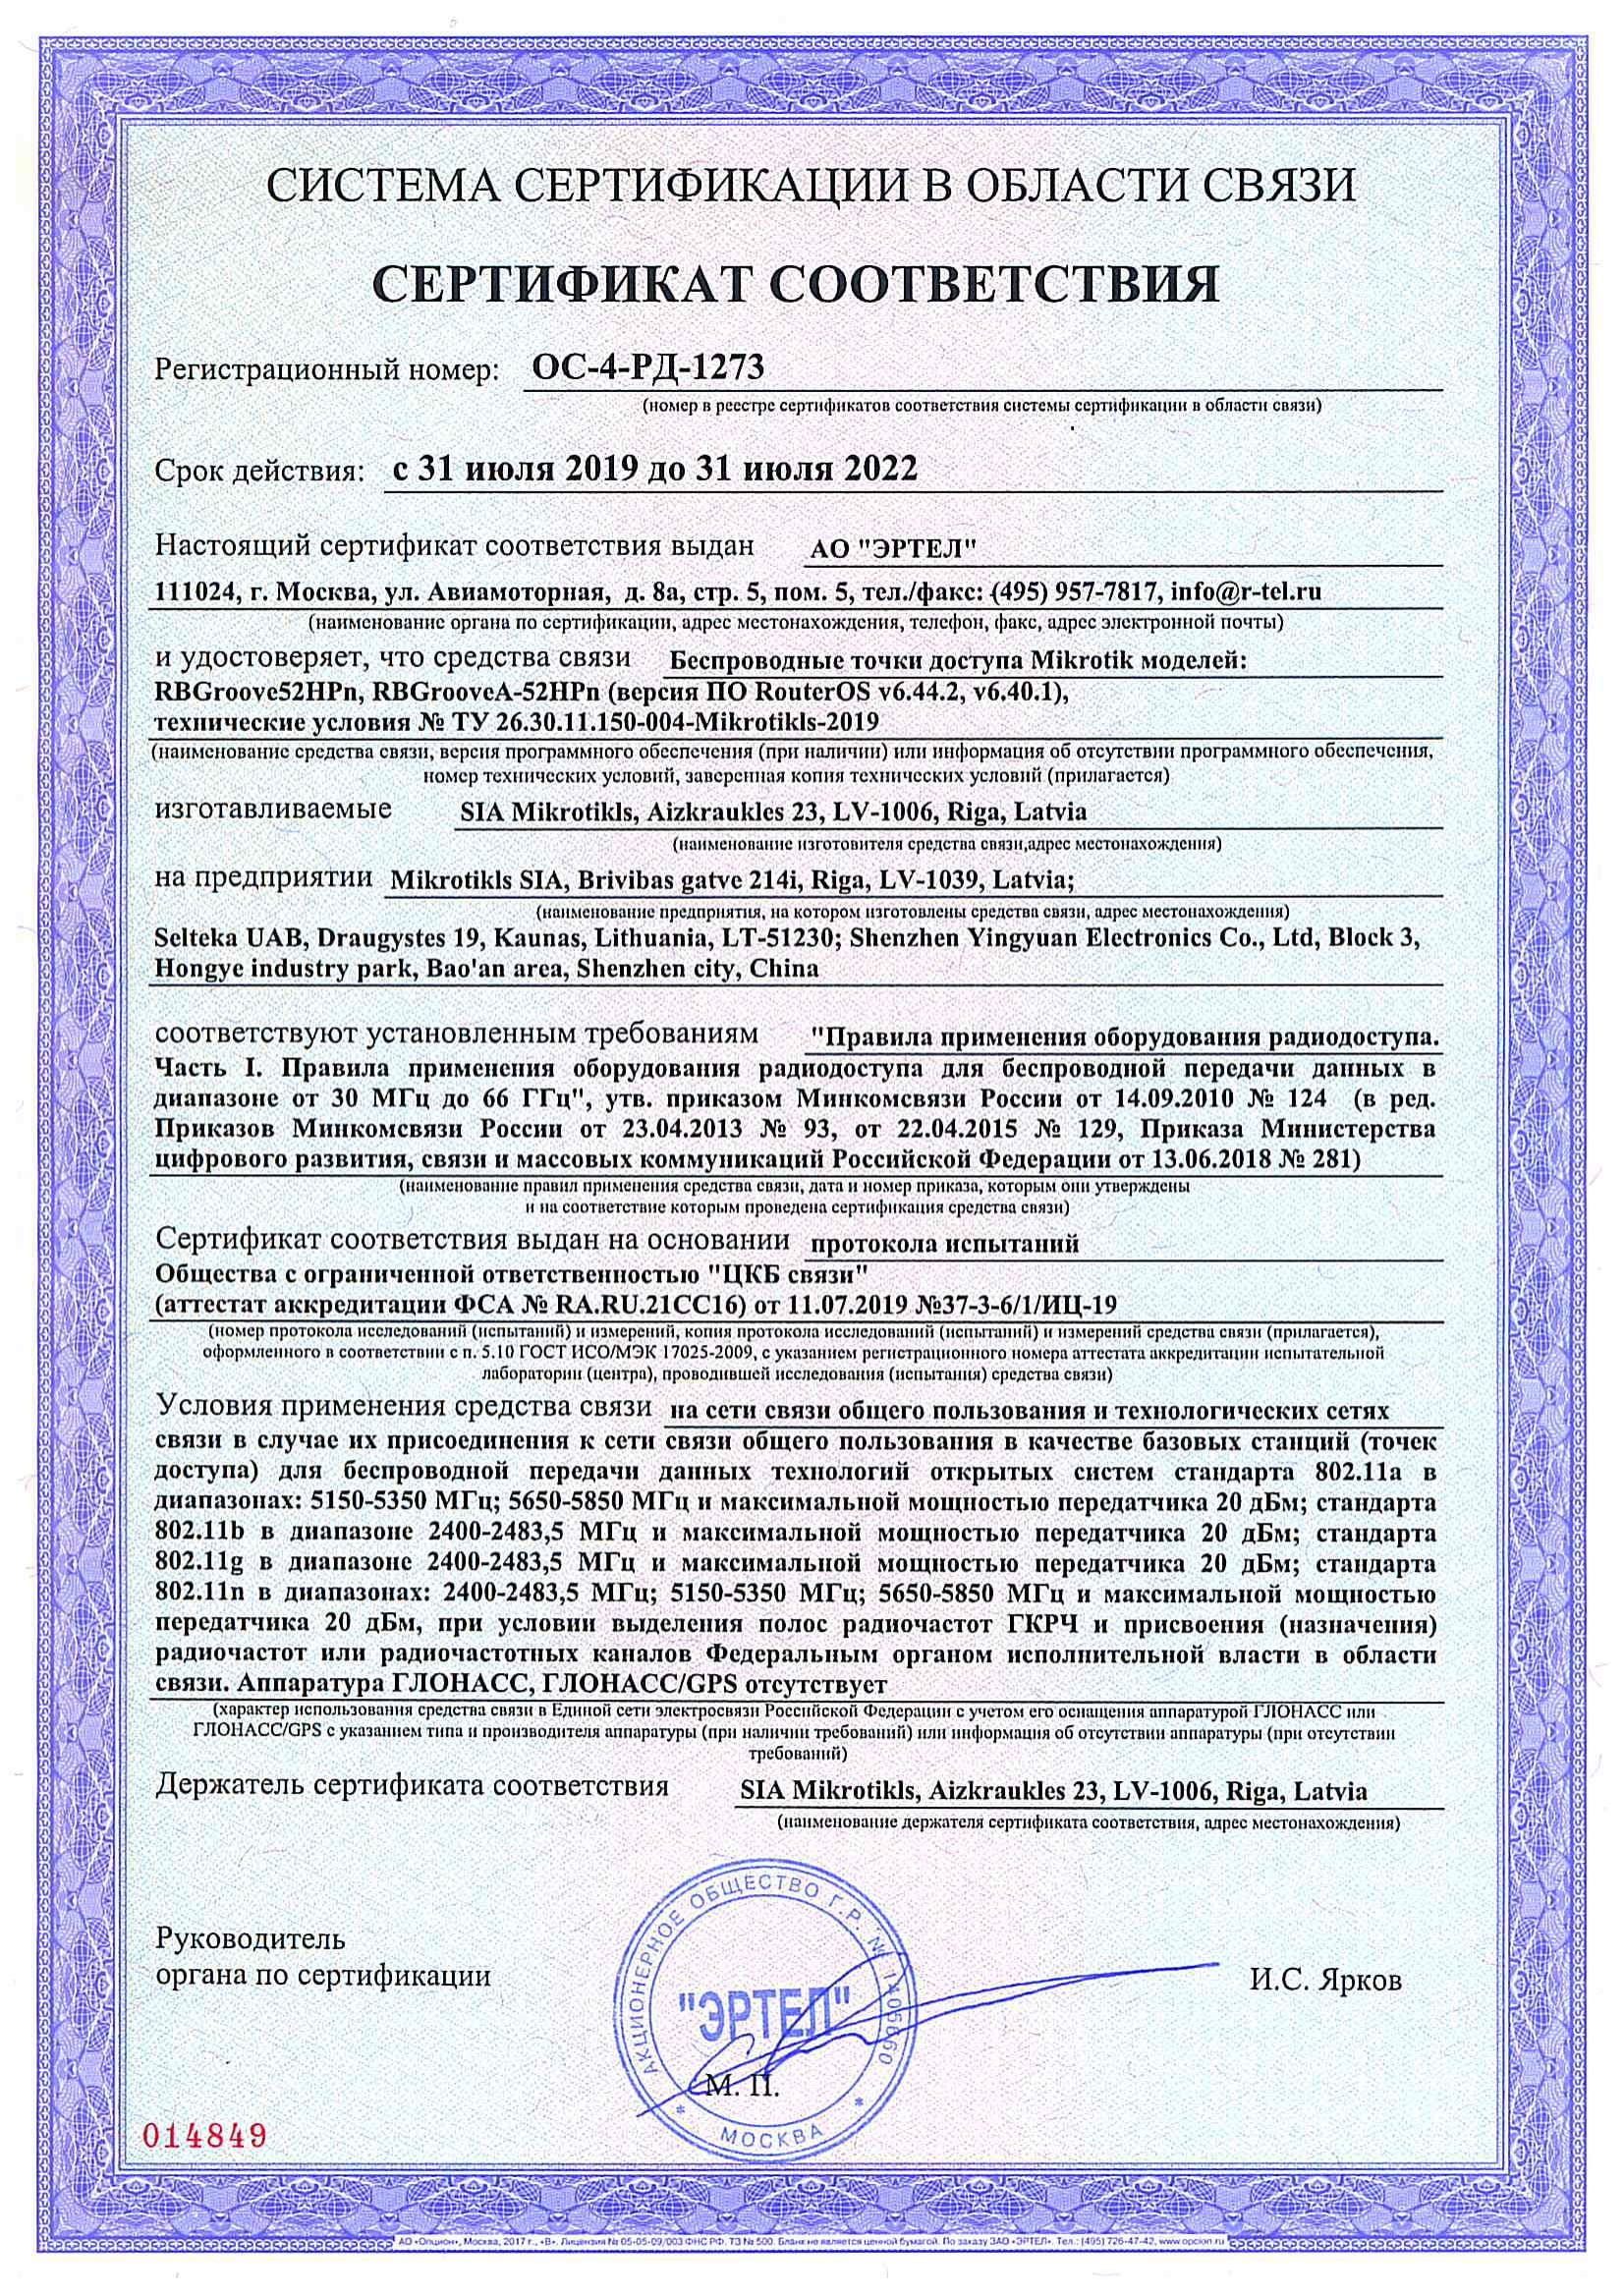 Сертификат соответствия в области связи ОС-4-РД-1273